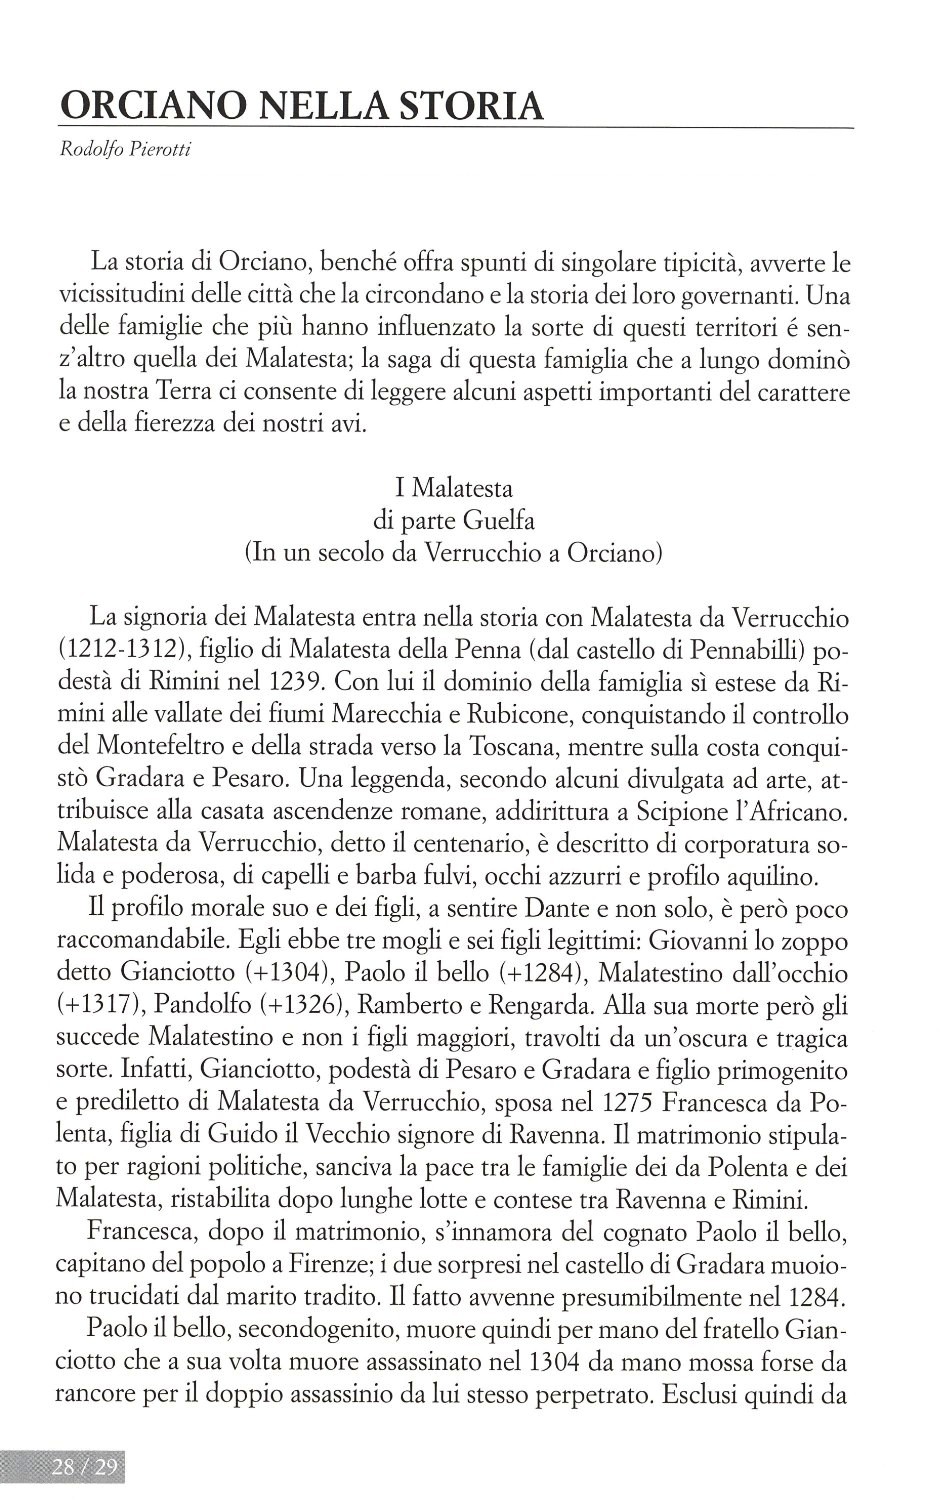 La torr i arduna tutti 2006 p.028